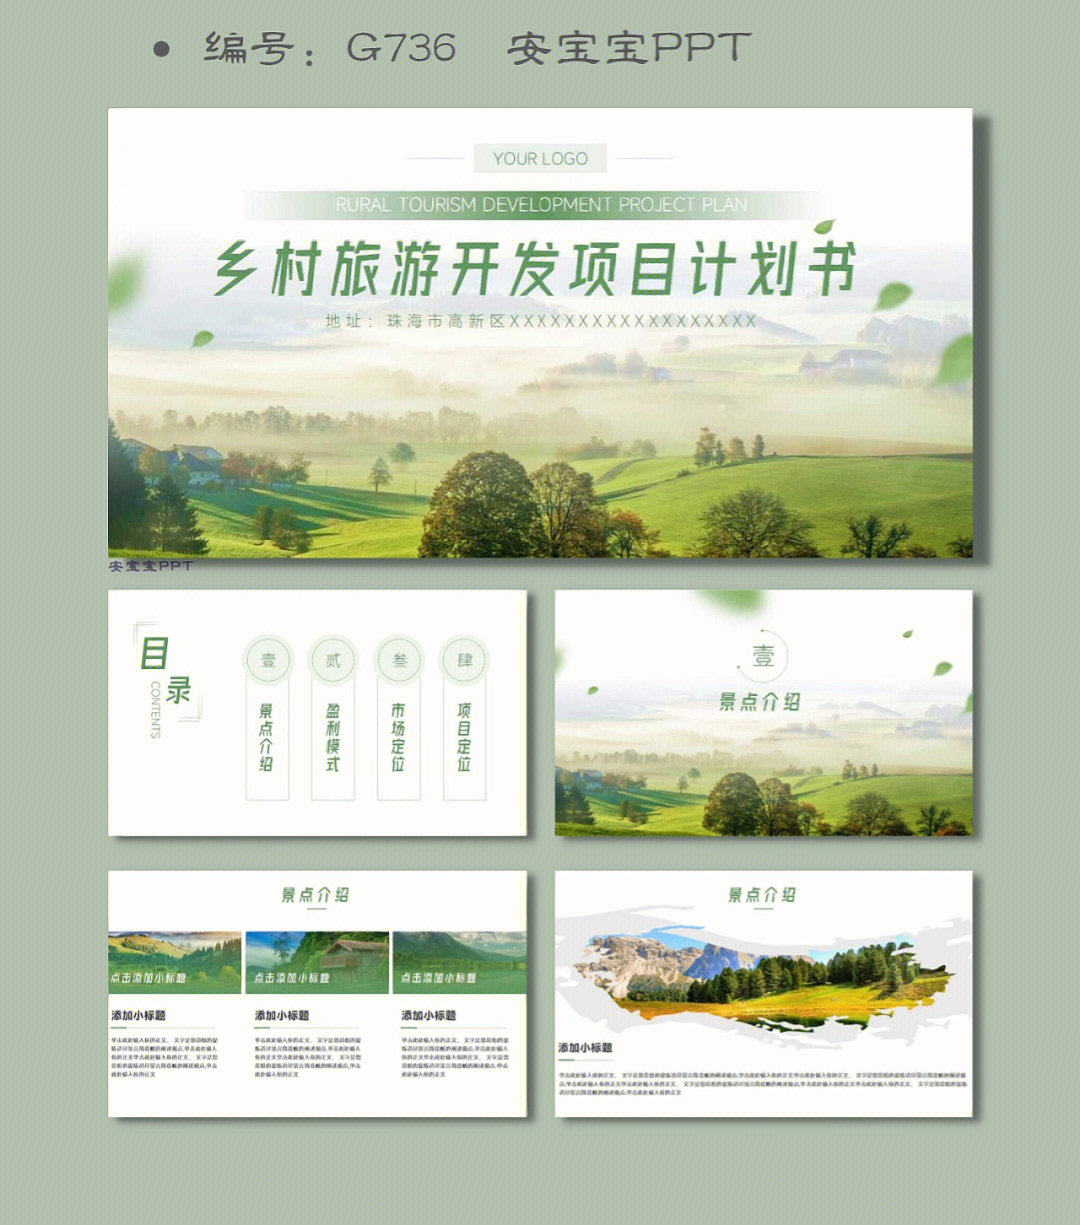 绿色生态美丽乡村旅游开发项目计划书ppt